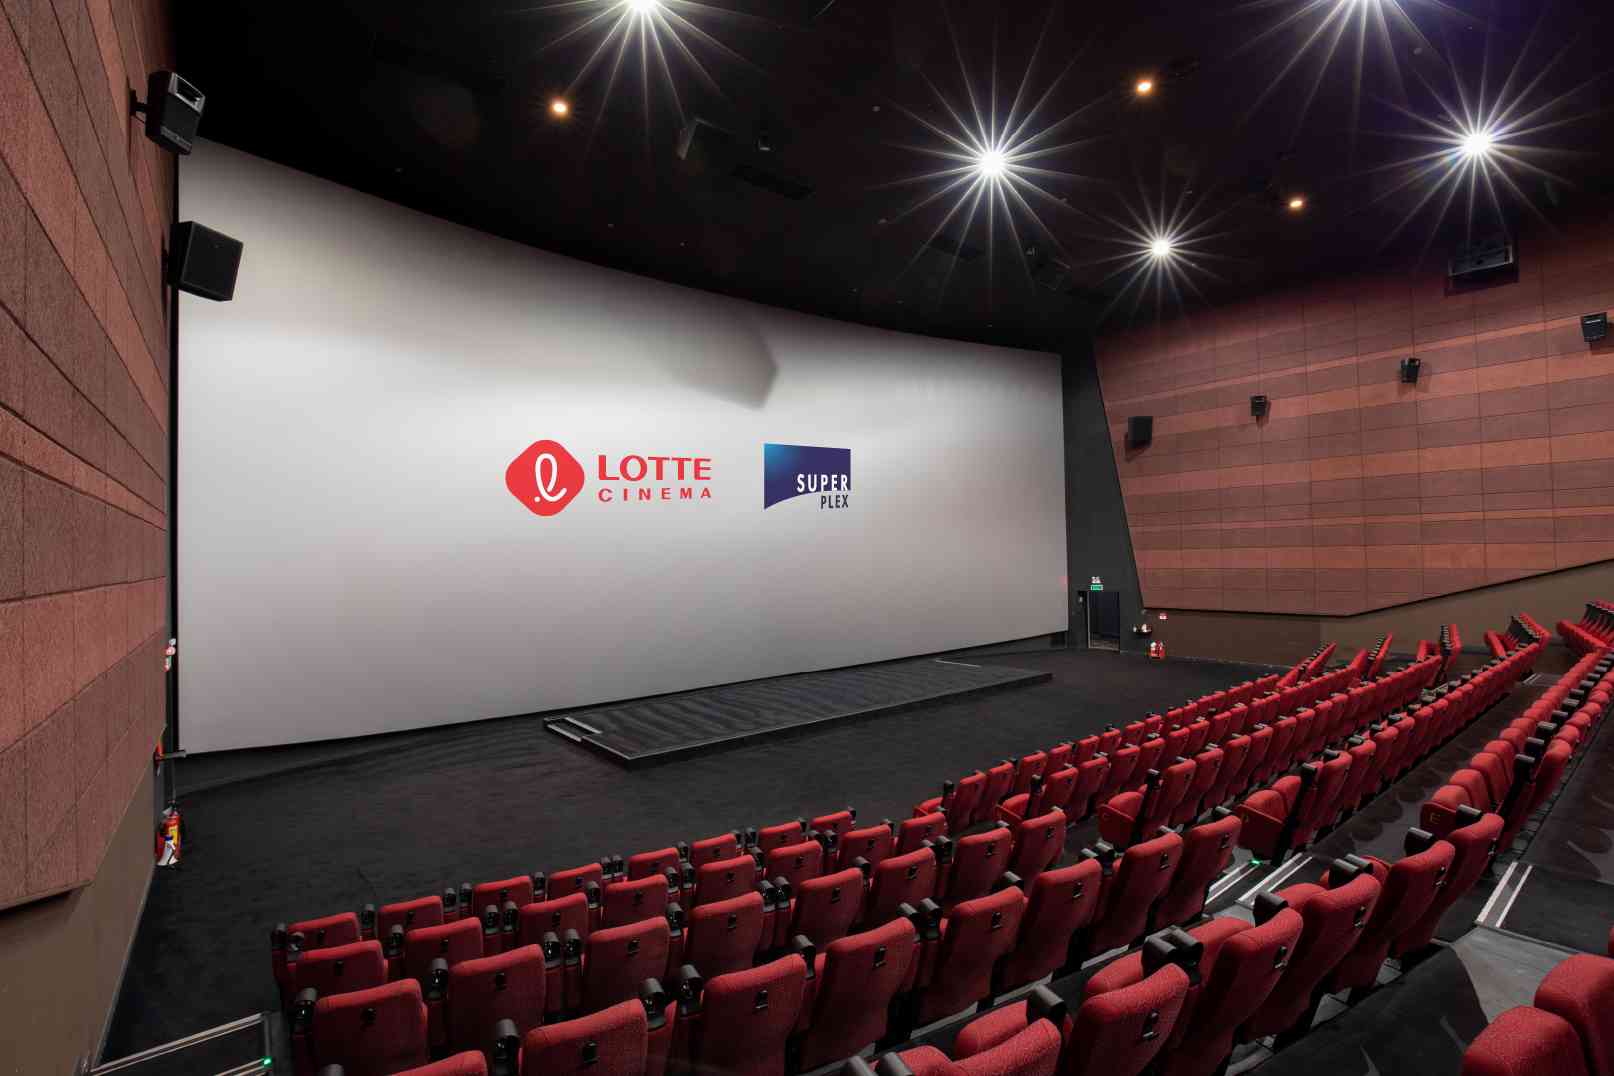 Phim Chiếu Rạp Lotte Gò Vấp: Trải Nghiệm Điện Ảnh Đỉnh Cao Tại Màn Chiếu Siêu Khủng